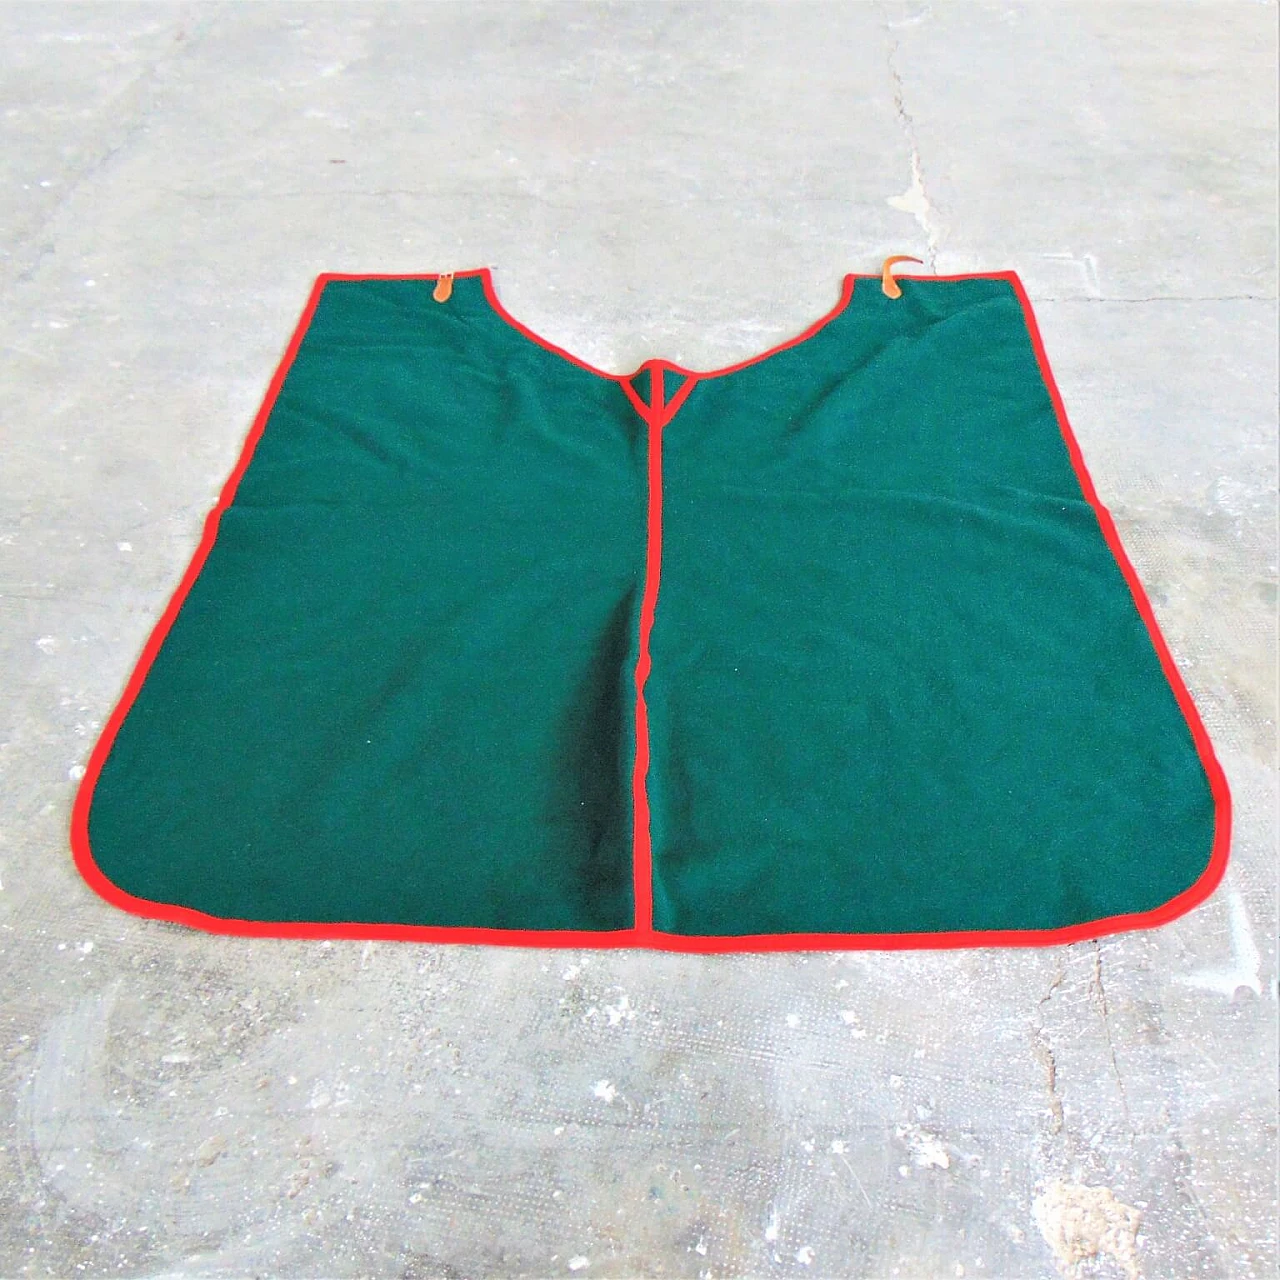 Coperta verde Selleria Pariani, realizzata a mano, pura lana vergine, profili rossi e cuoio, 1980 1071694